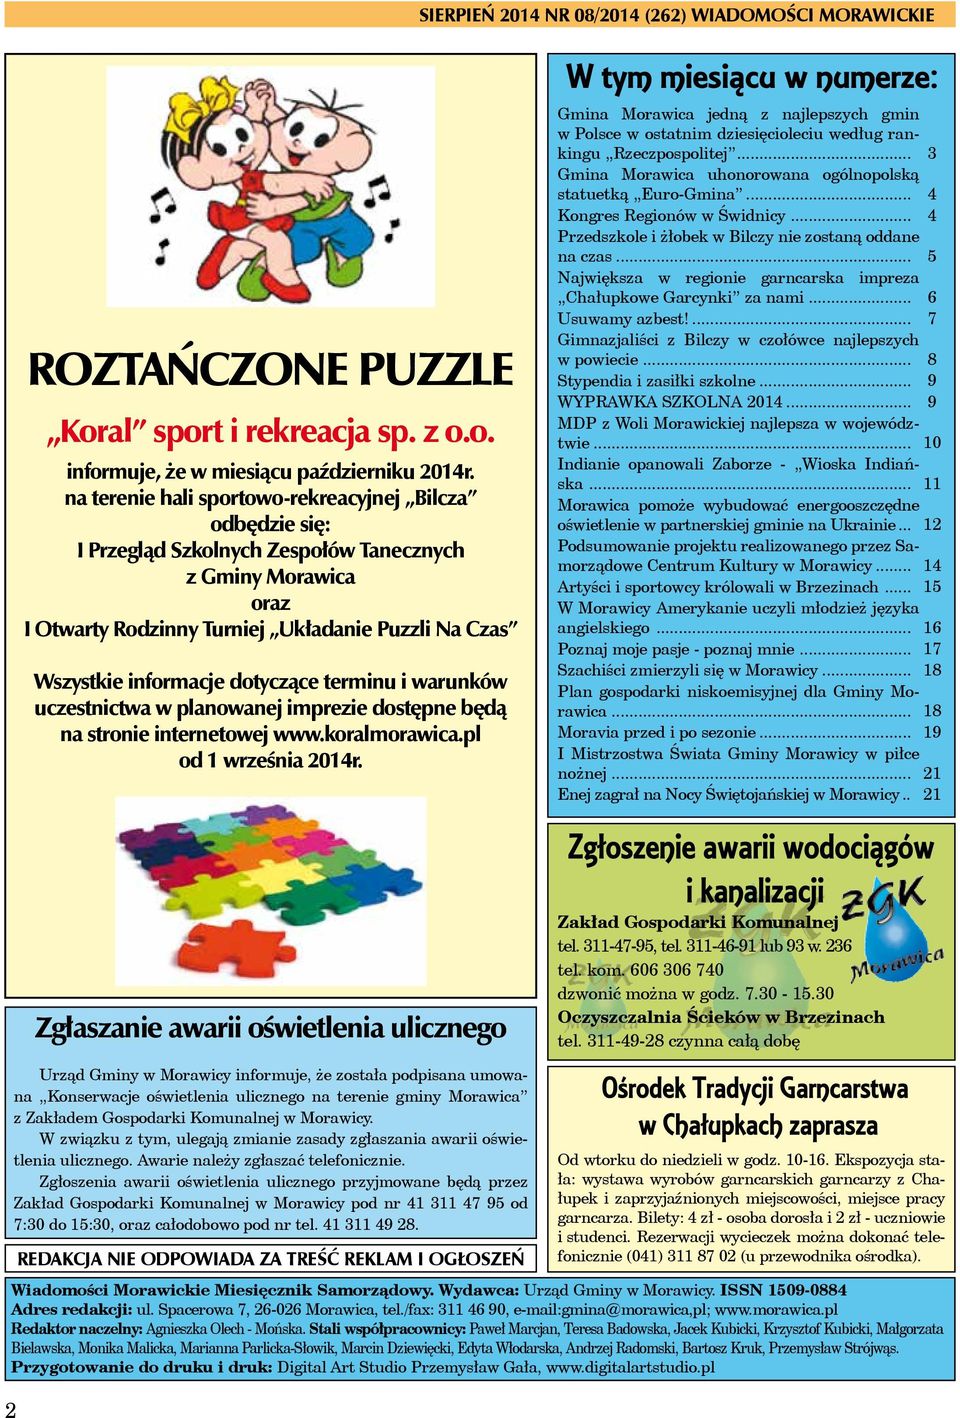 dotyczące terminu i warunków uczestnictwa w planowanej imprezie dostępne będą na stronie internetowej www.koralmorawica.pl od 1 września 2014r.